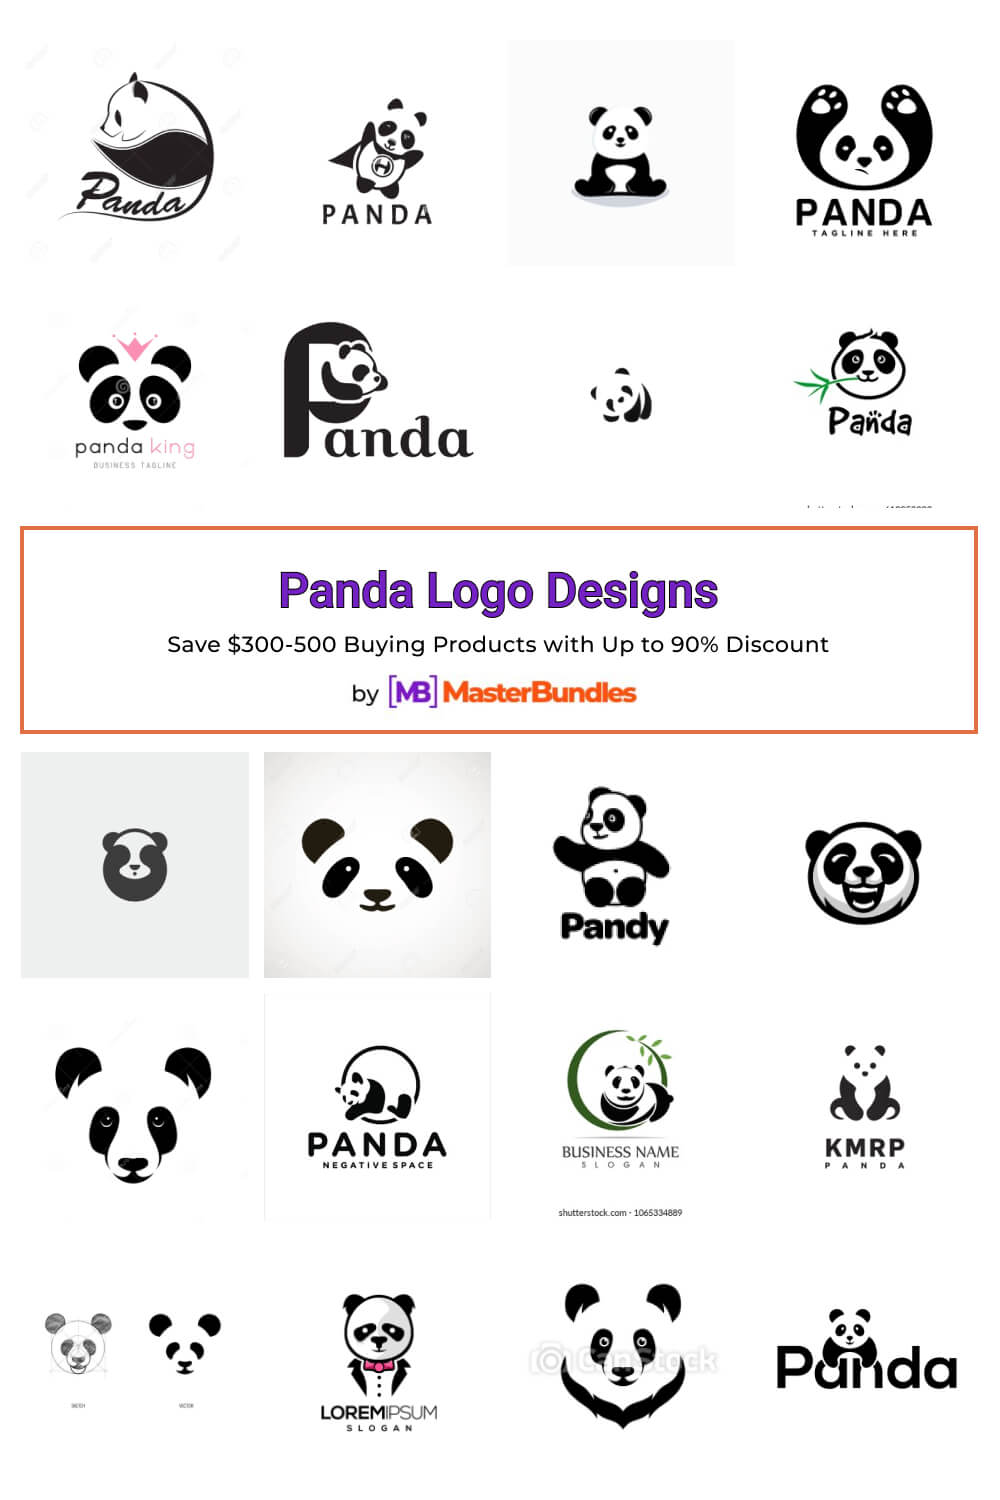 panda logo designs pinterest image.